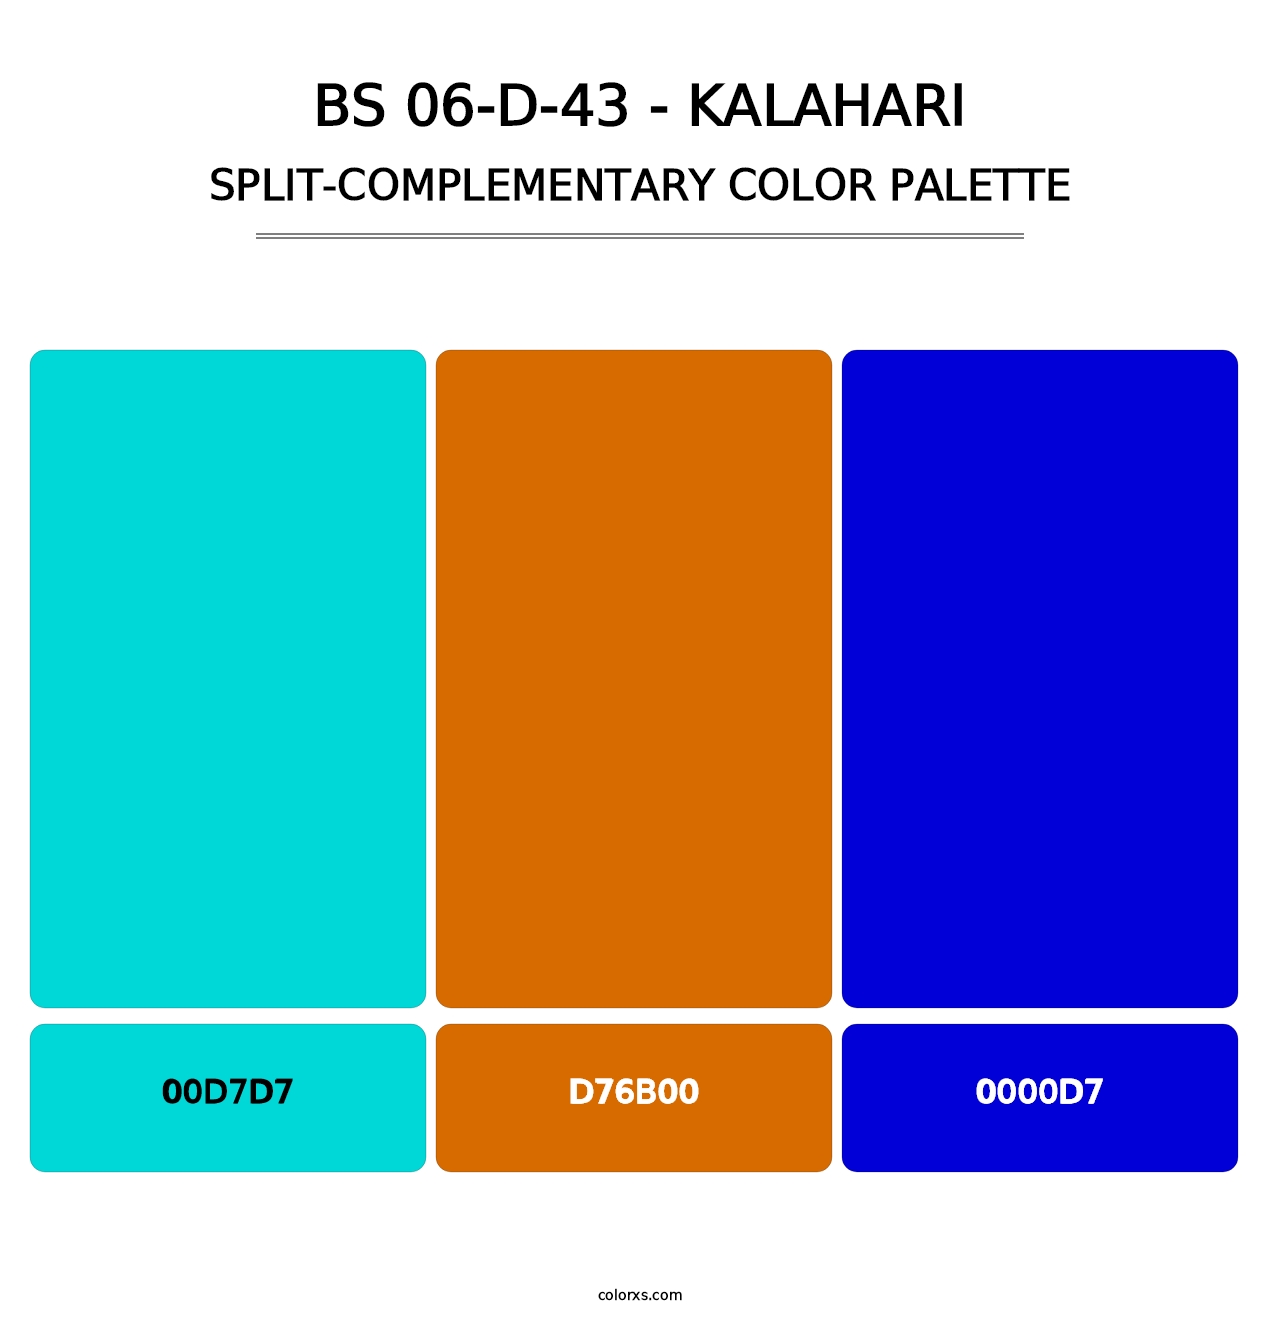 BS 06-D-43 - Kalahari - Split-Complementary Color Palette